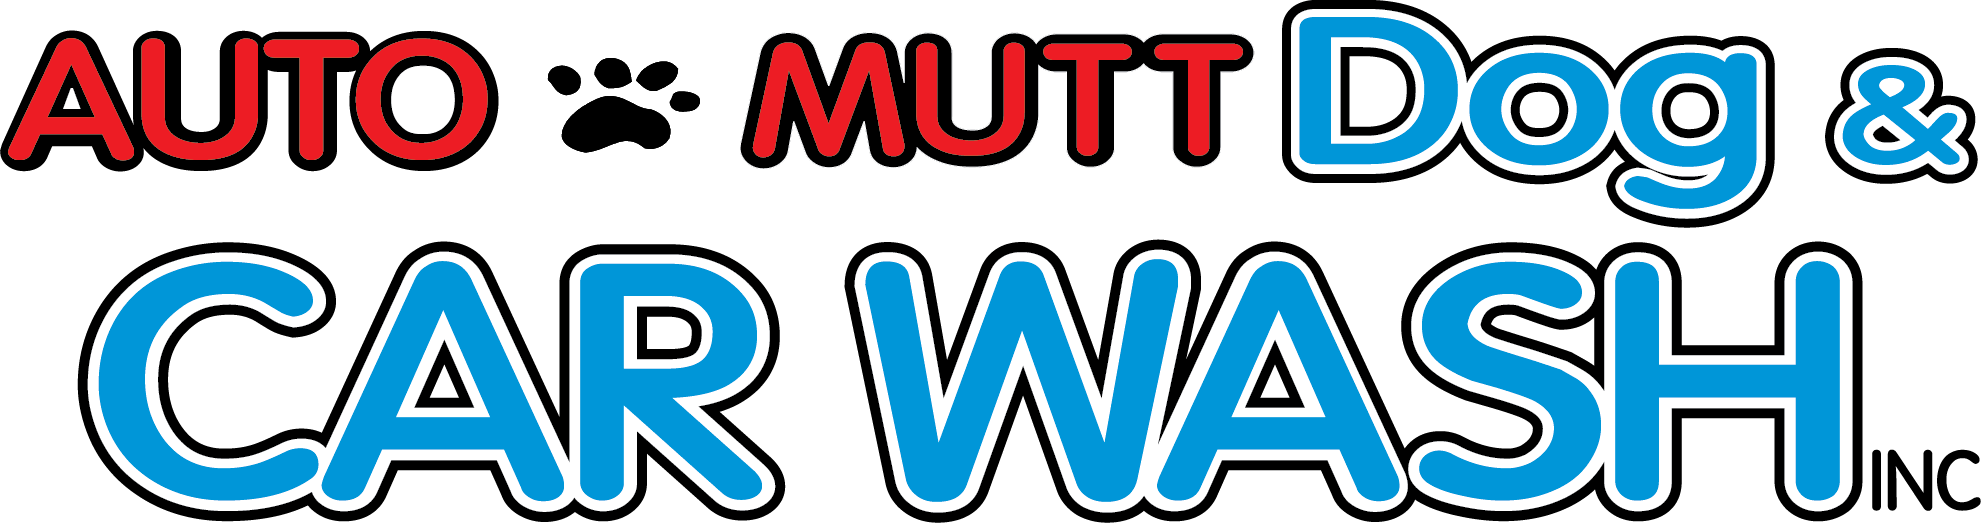 Auto Mutt Dog & Car Wash